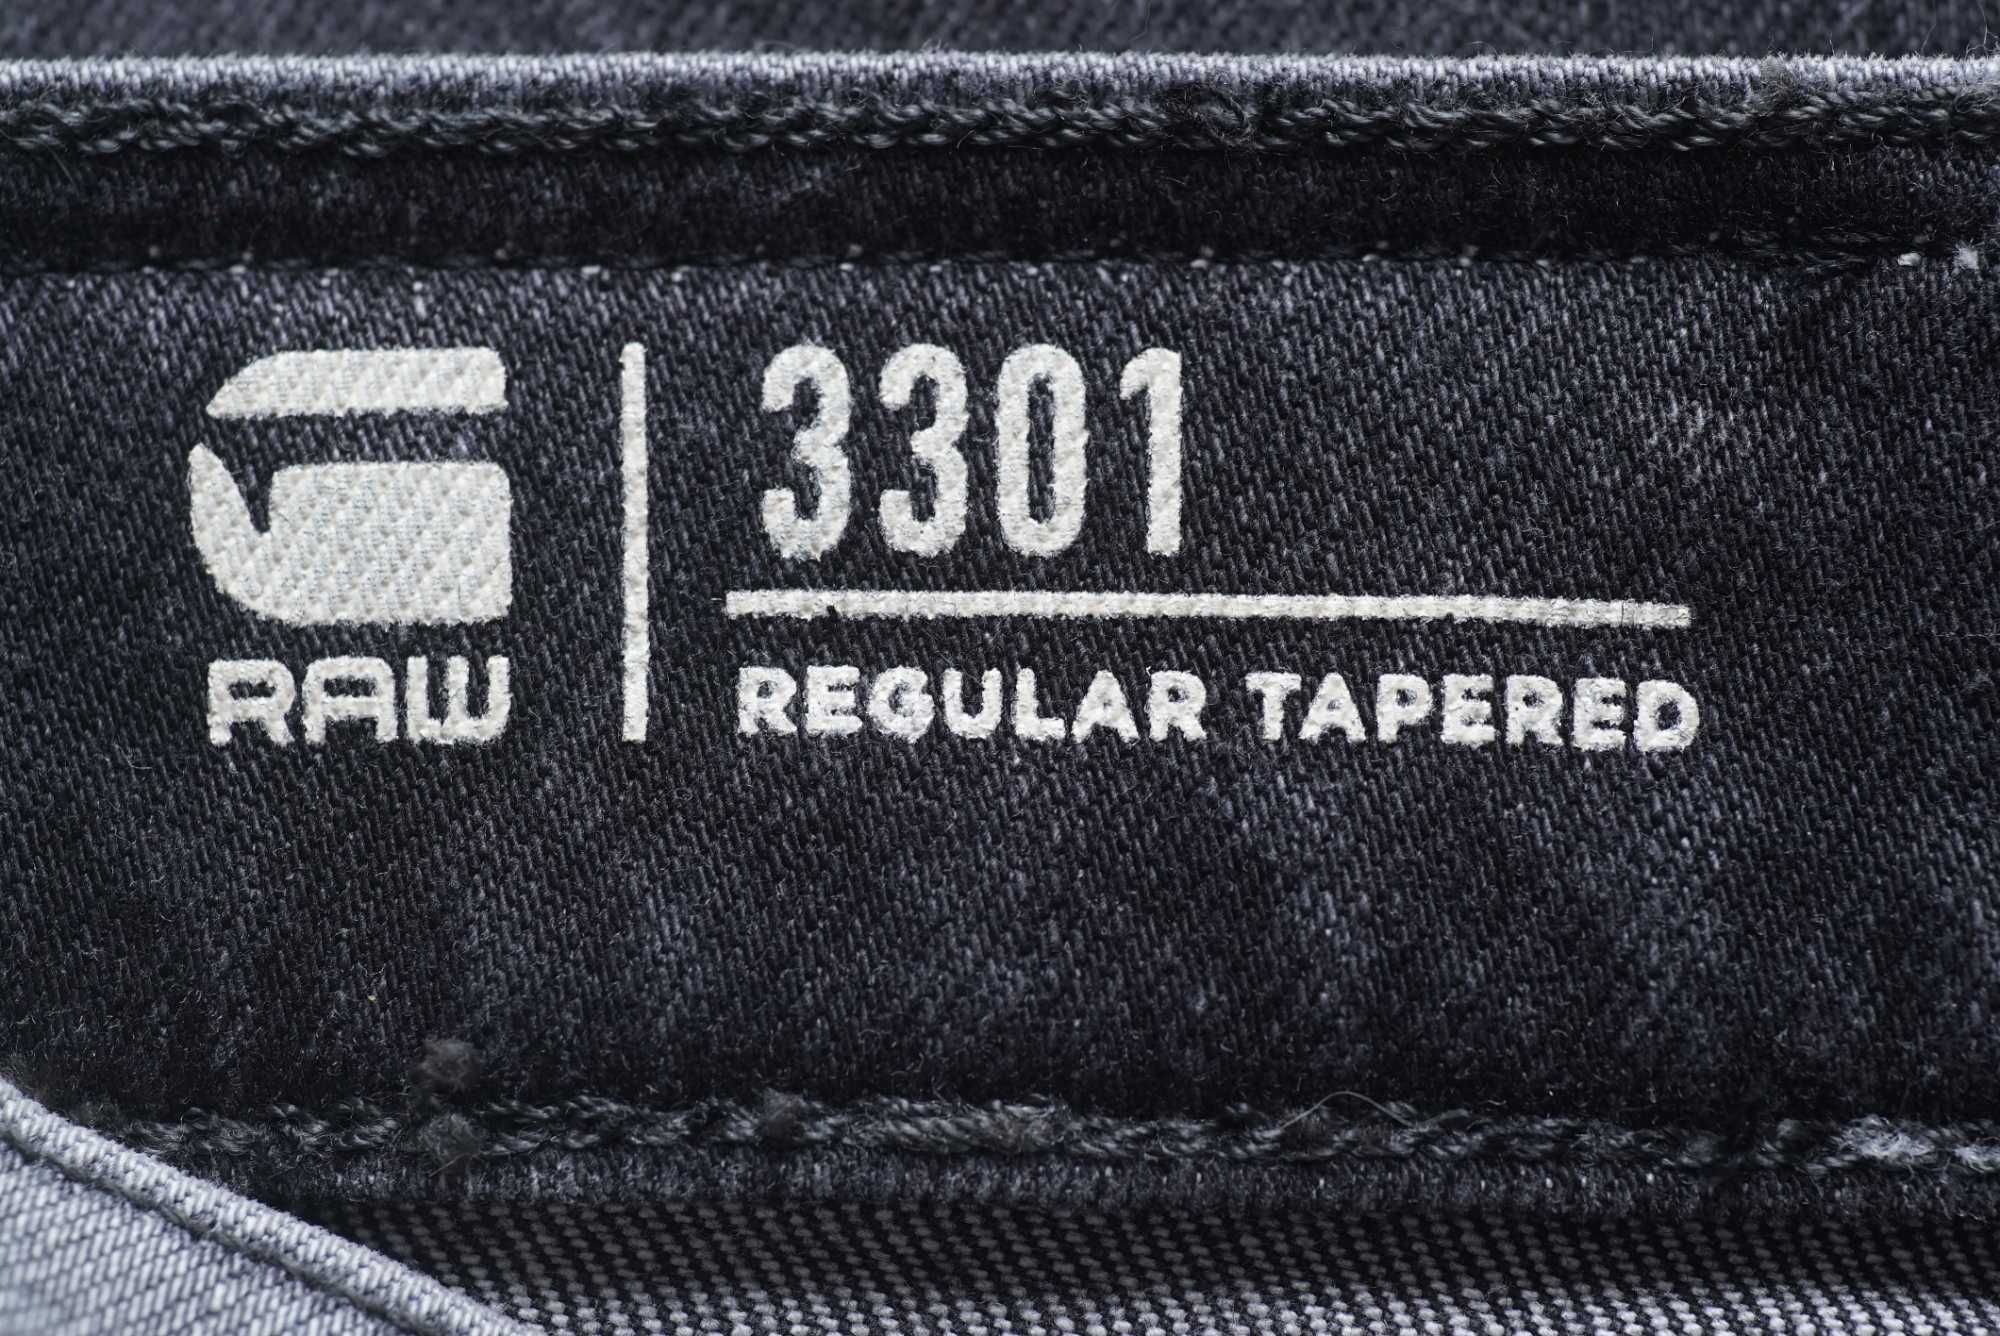 Мужские джинсы G-STAR RAW серого цвета (3301 Regular Tapered)